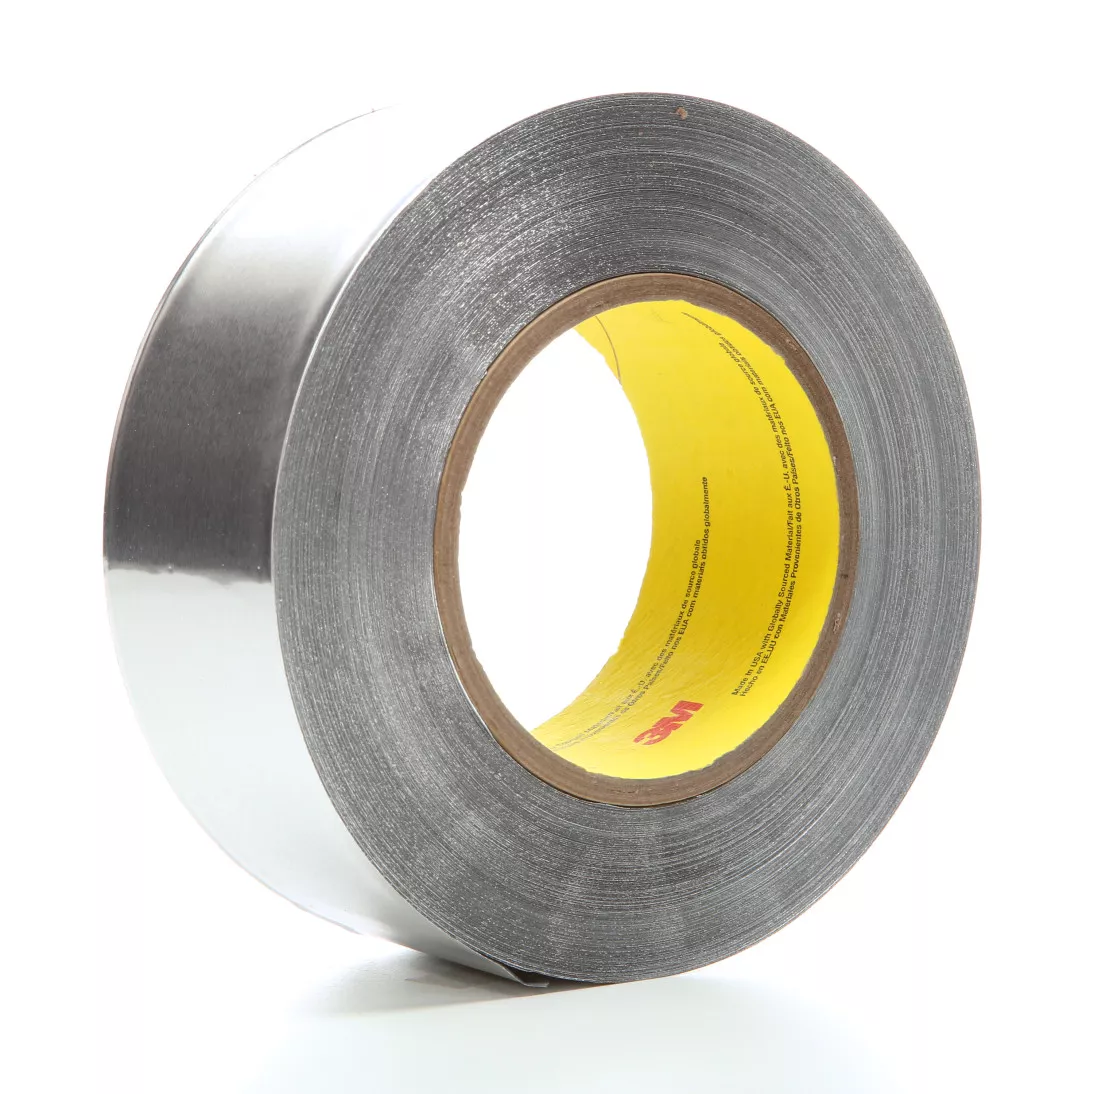 3M™ Heavy Duty Aluminum Foil Tape 438, Silver, 4.85 in x 60 yd, 7.2 mil,
2 Rolls/Case